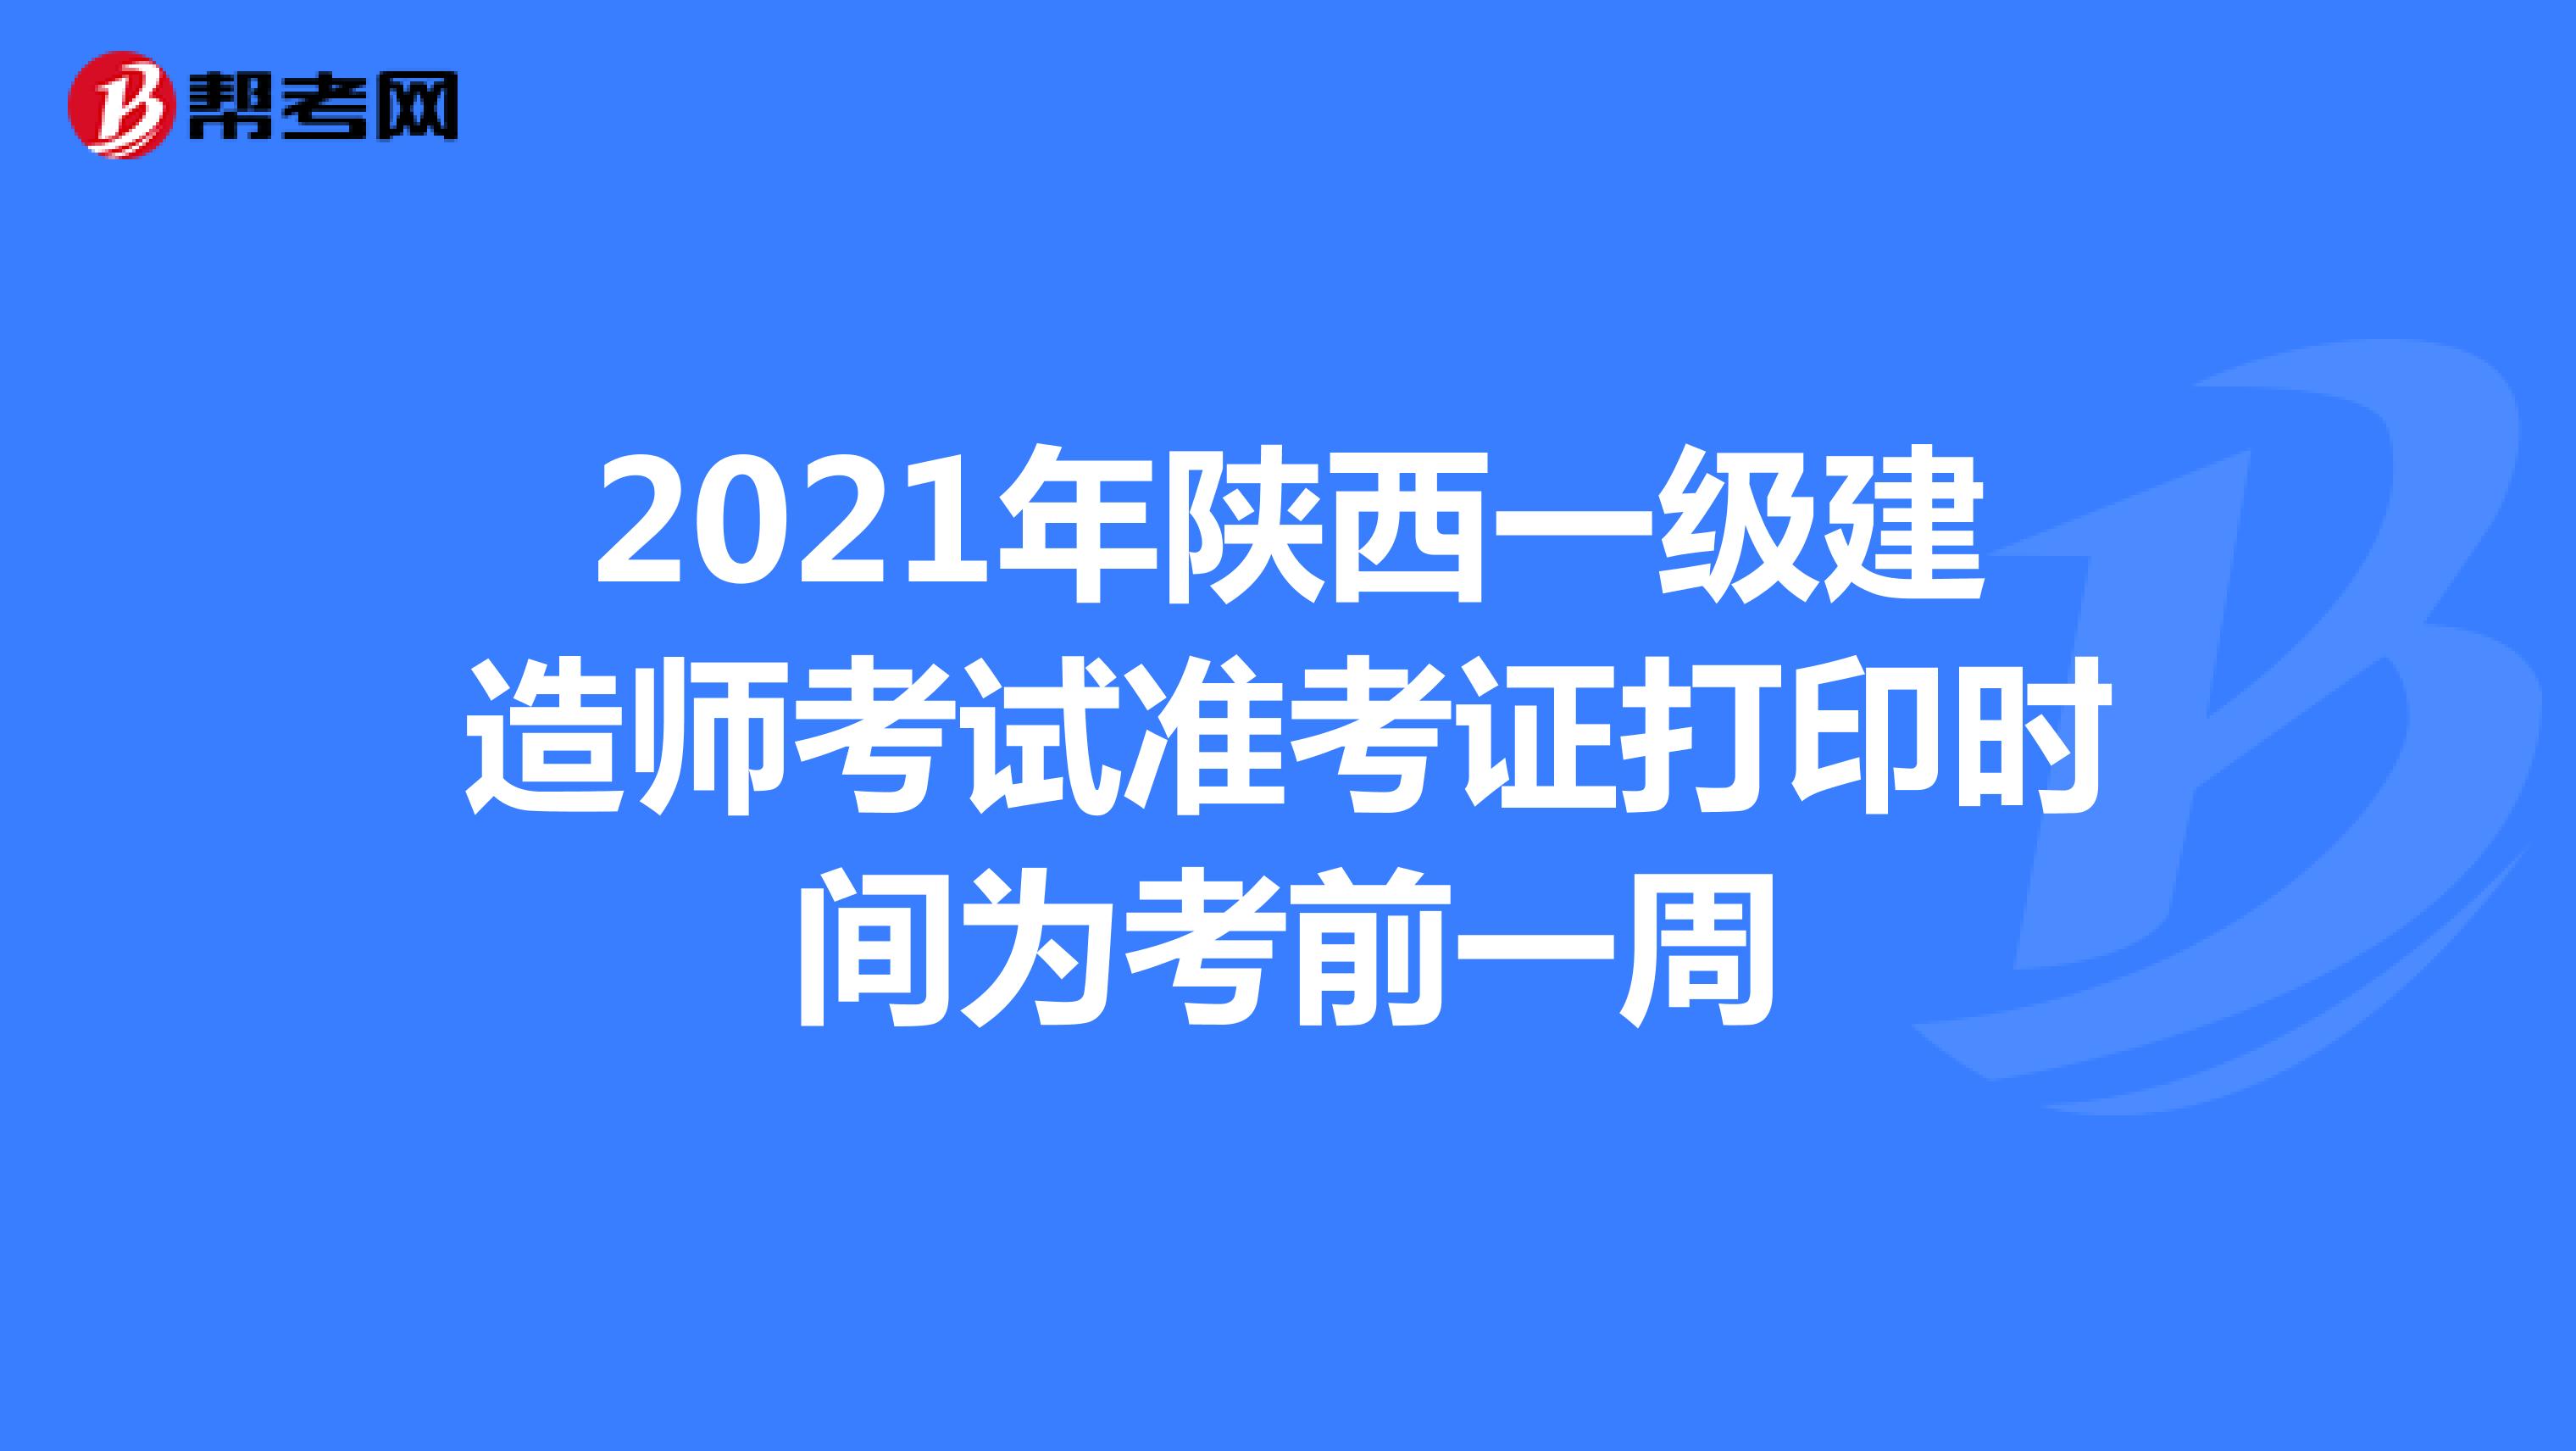 2021年陕西一级建造师考试准考证打印时间为考前一周